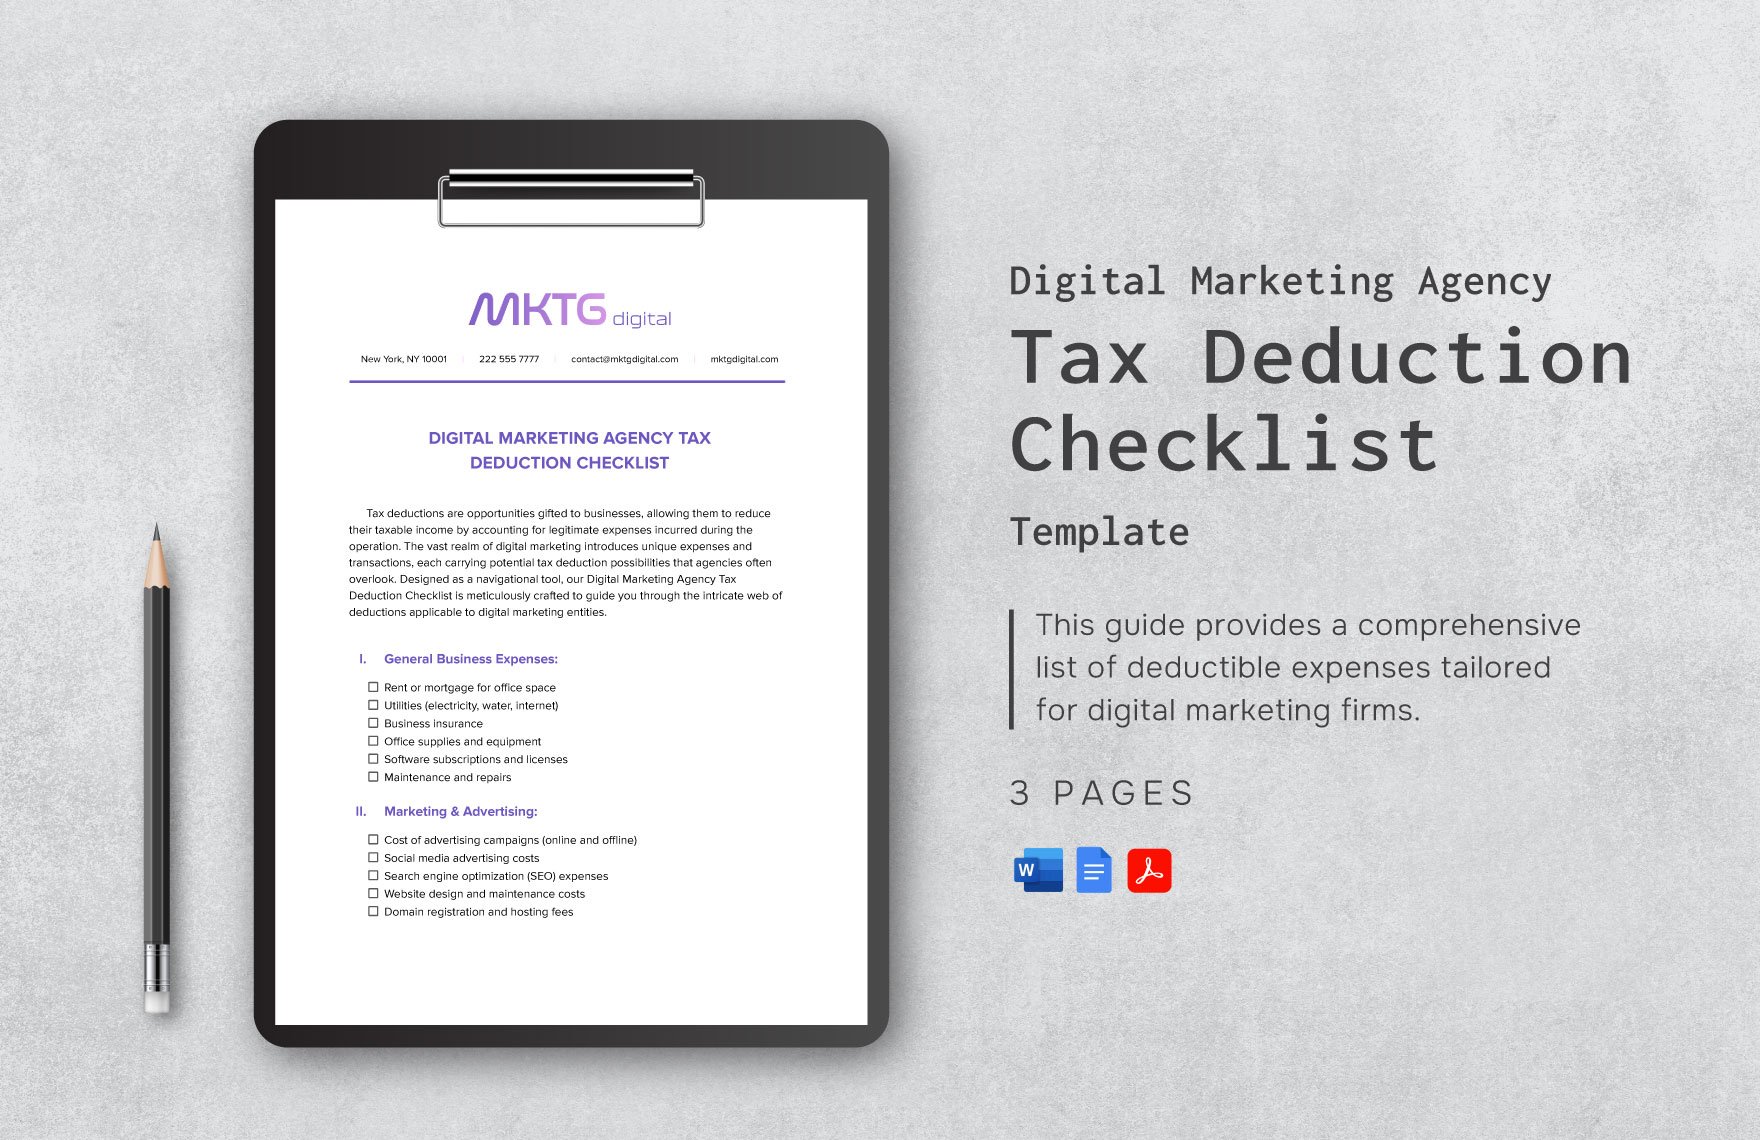 Digital Marketing Agency Tax Deduction Checklist Template